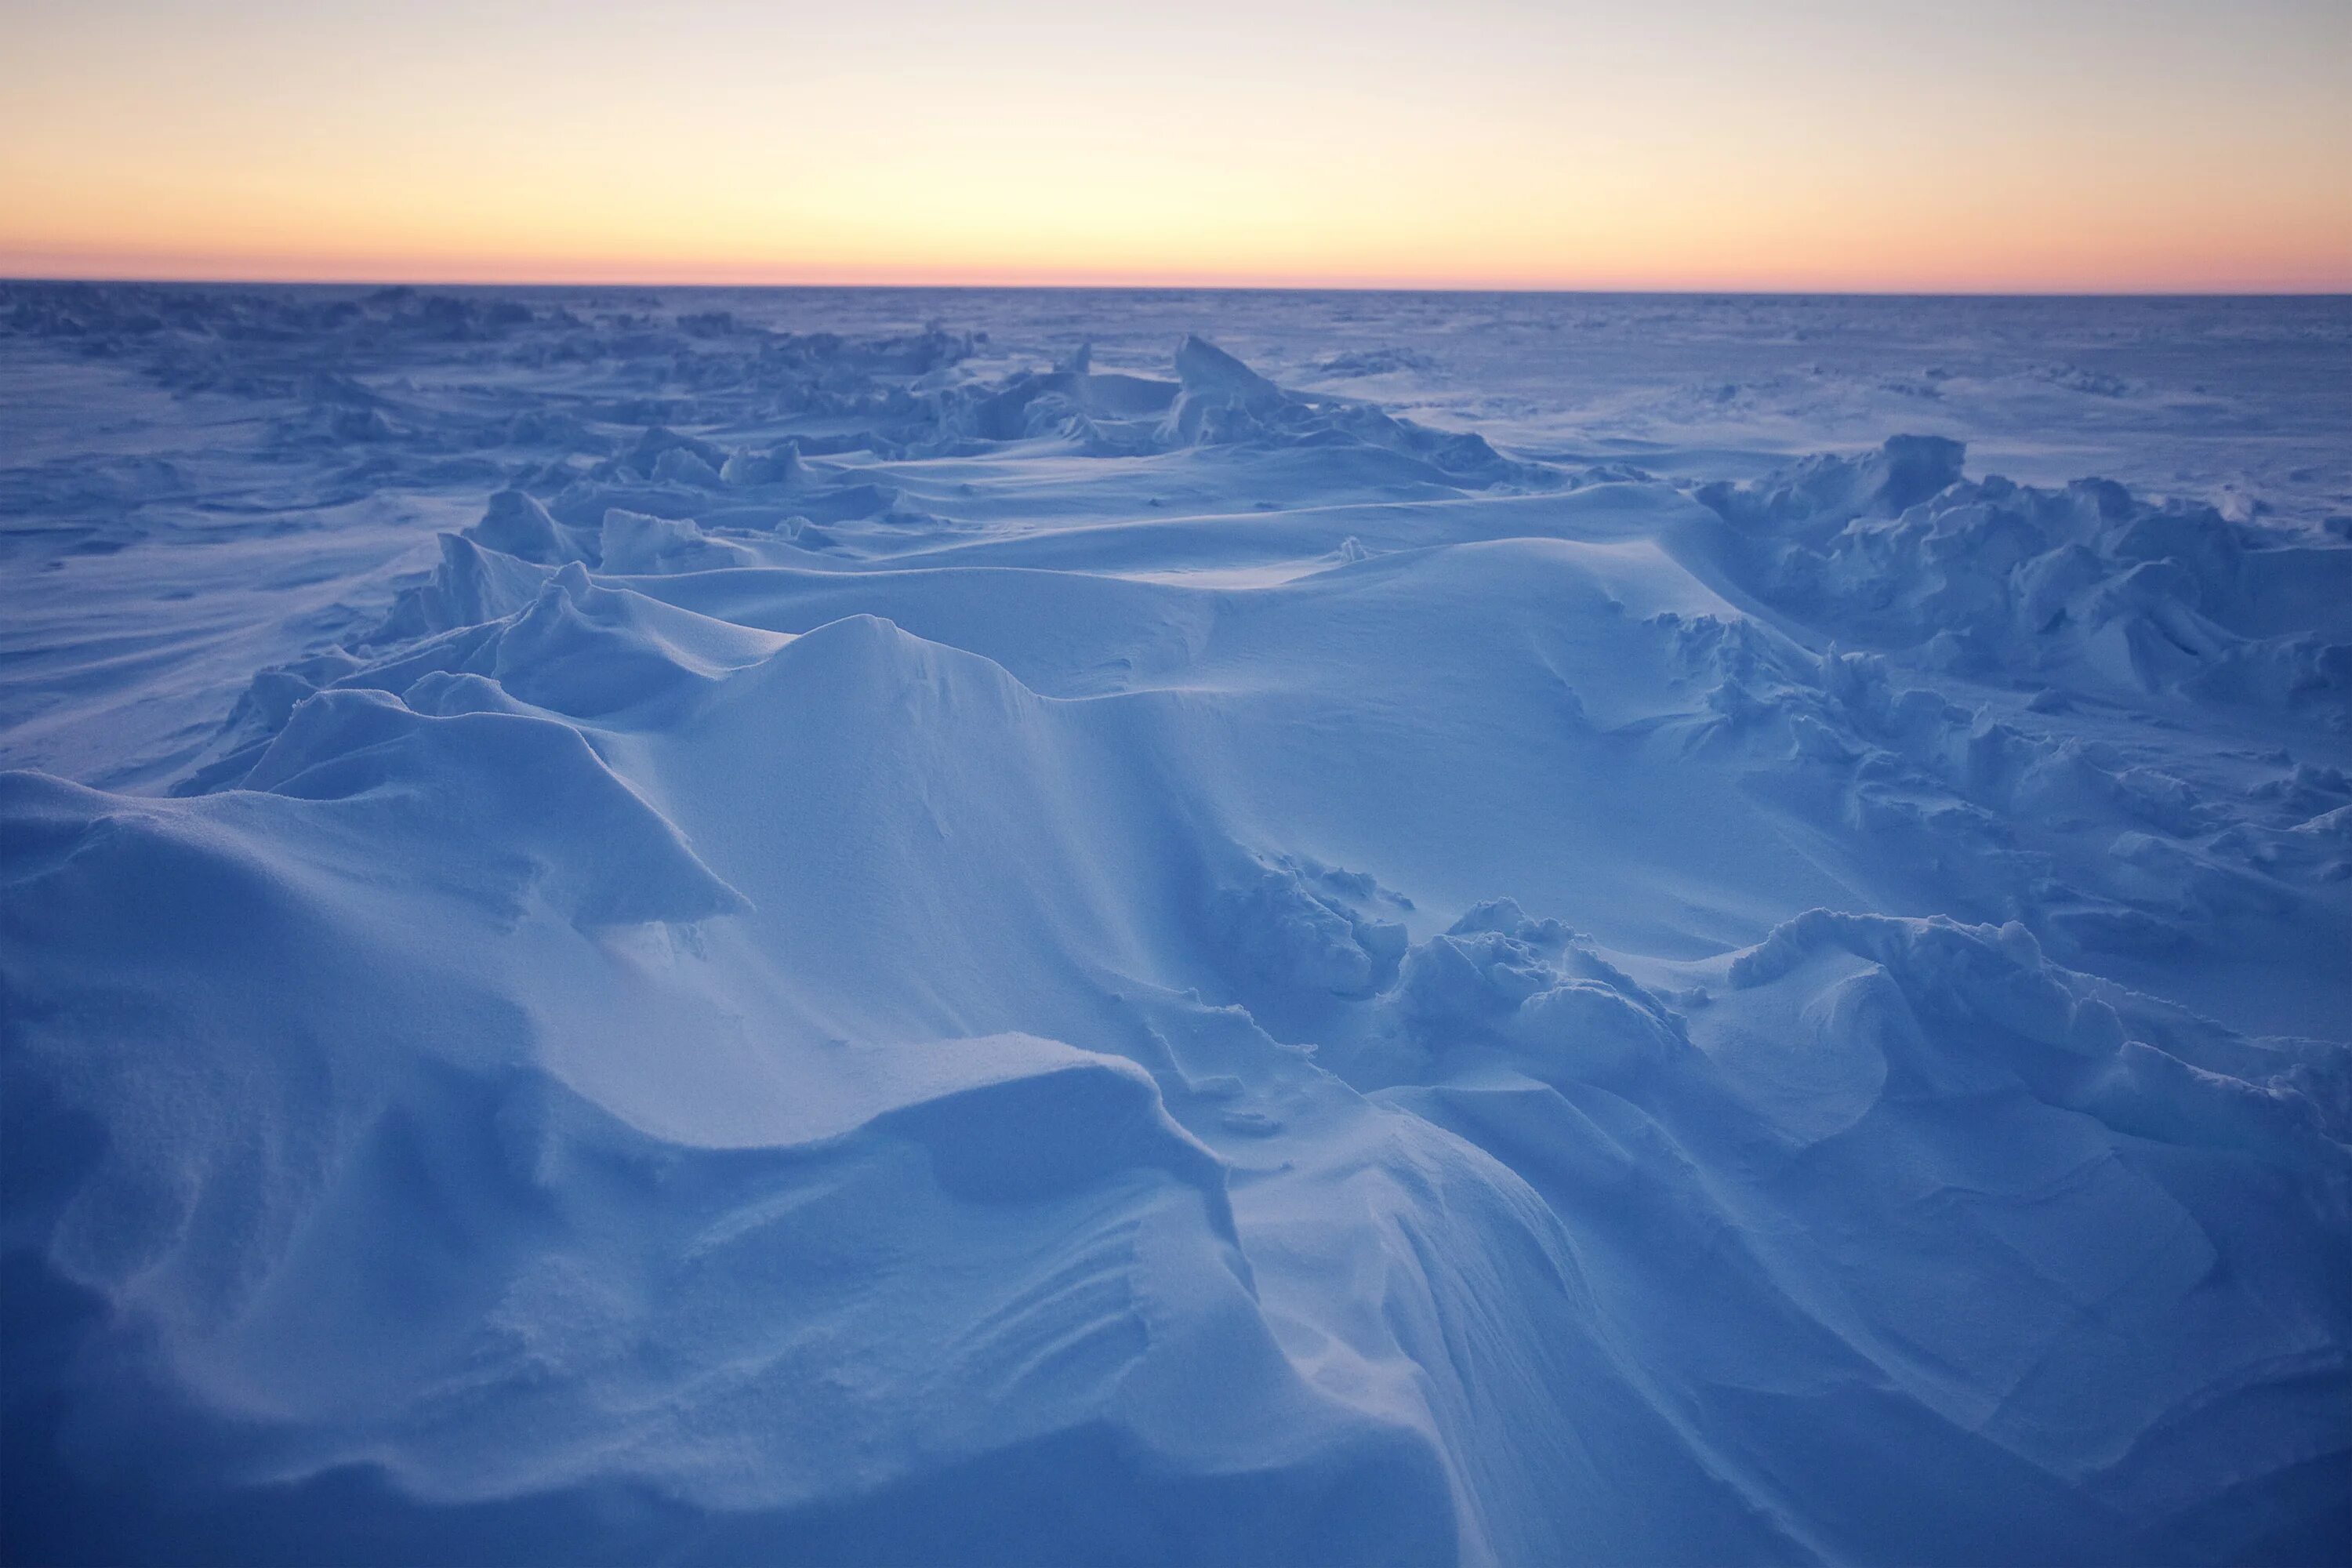 Арктика Северный Ледовитый океан. Мерзлота Ледовитый океан. Северный Ледовитый океан паковый лед. Льды Северного Ледовитого океана. Северный ледяной океан